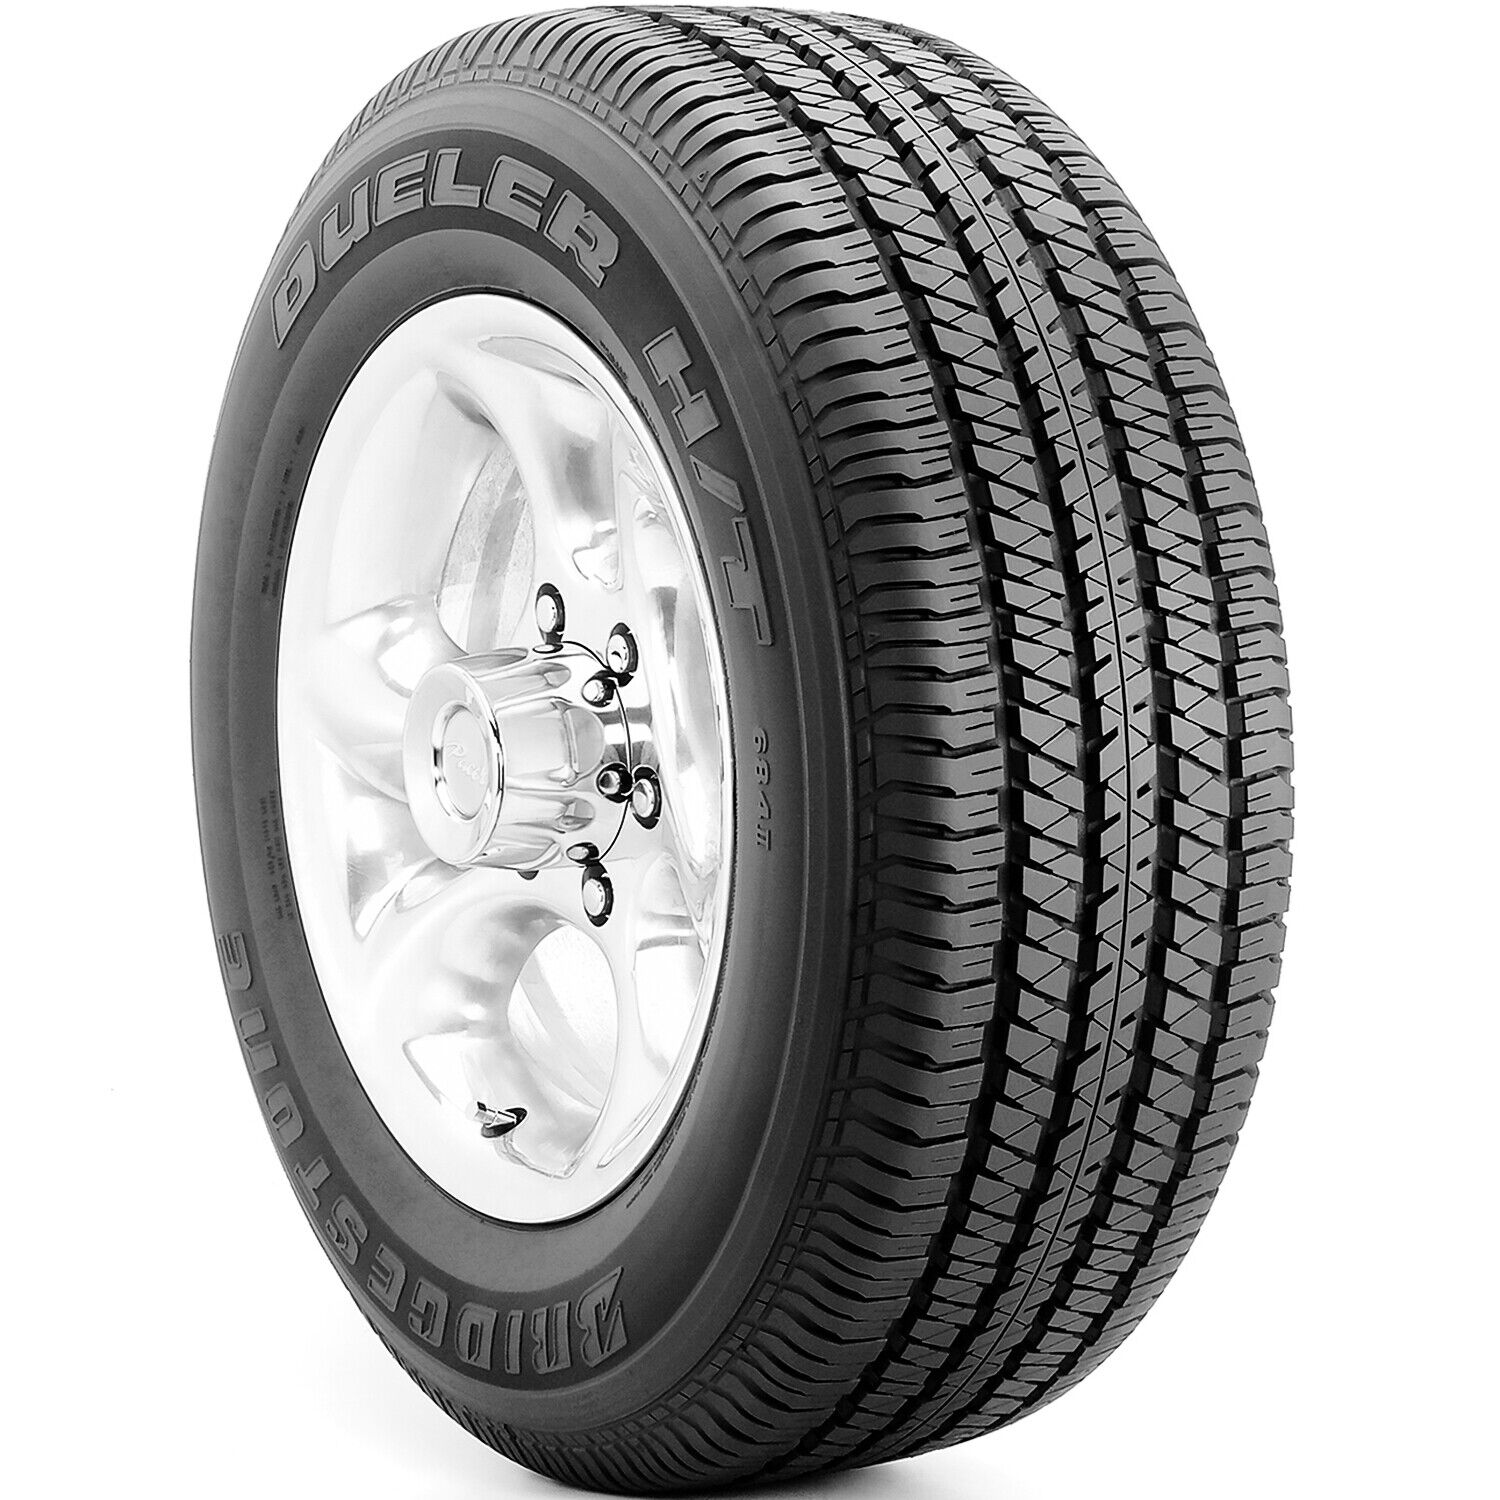 Tire Bridgestone Dueler H/T 684 II 255/70R16 111S AS A/S All Season